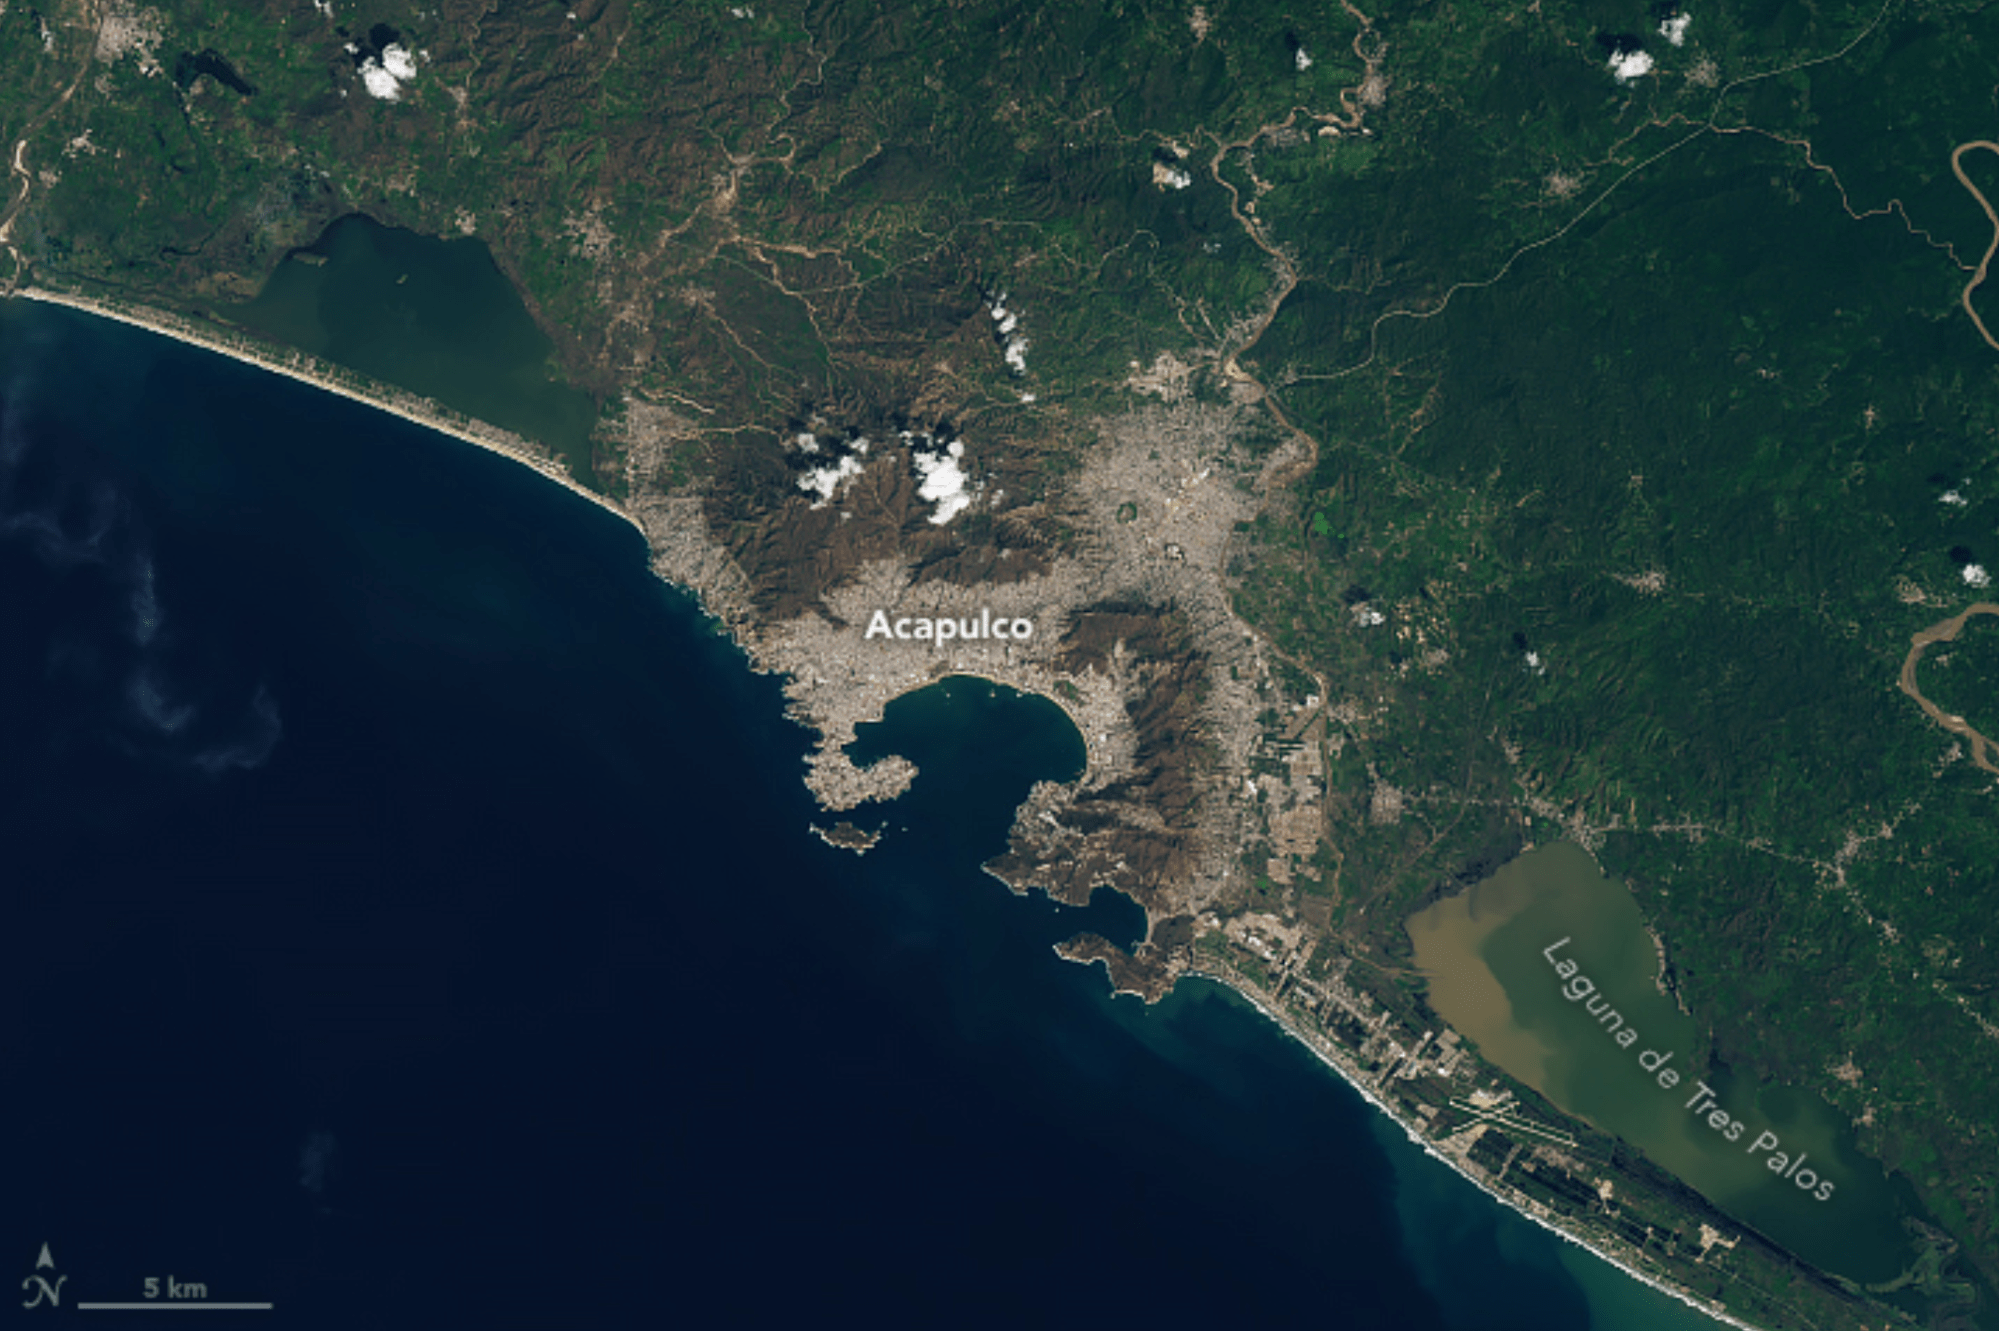 Esta imagen muestra la ciudad de Acapulco y sus alrededores después del azote del huracán Otis. Se observa que el paisaje cerca de la ciudad cambia y la vegetación, antes verde y exuberante, se ve marrón. La escorrentía de sedimentos por exceso de lluvias todavía se puede observar en la Laguna de Tres Palos casi una semana después de la tormenta. El sensor de OLI 2 a bordo de Landsat 9 adquirió la imagen el 31 de octubre.